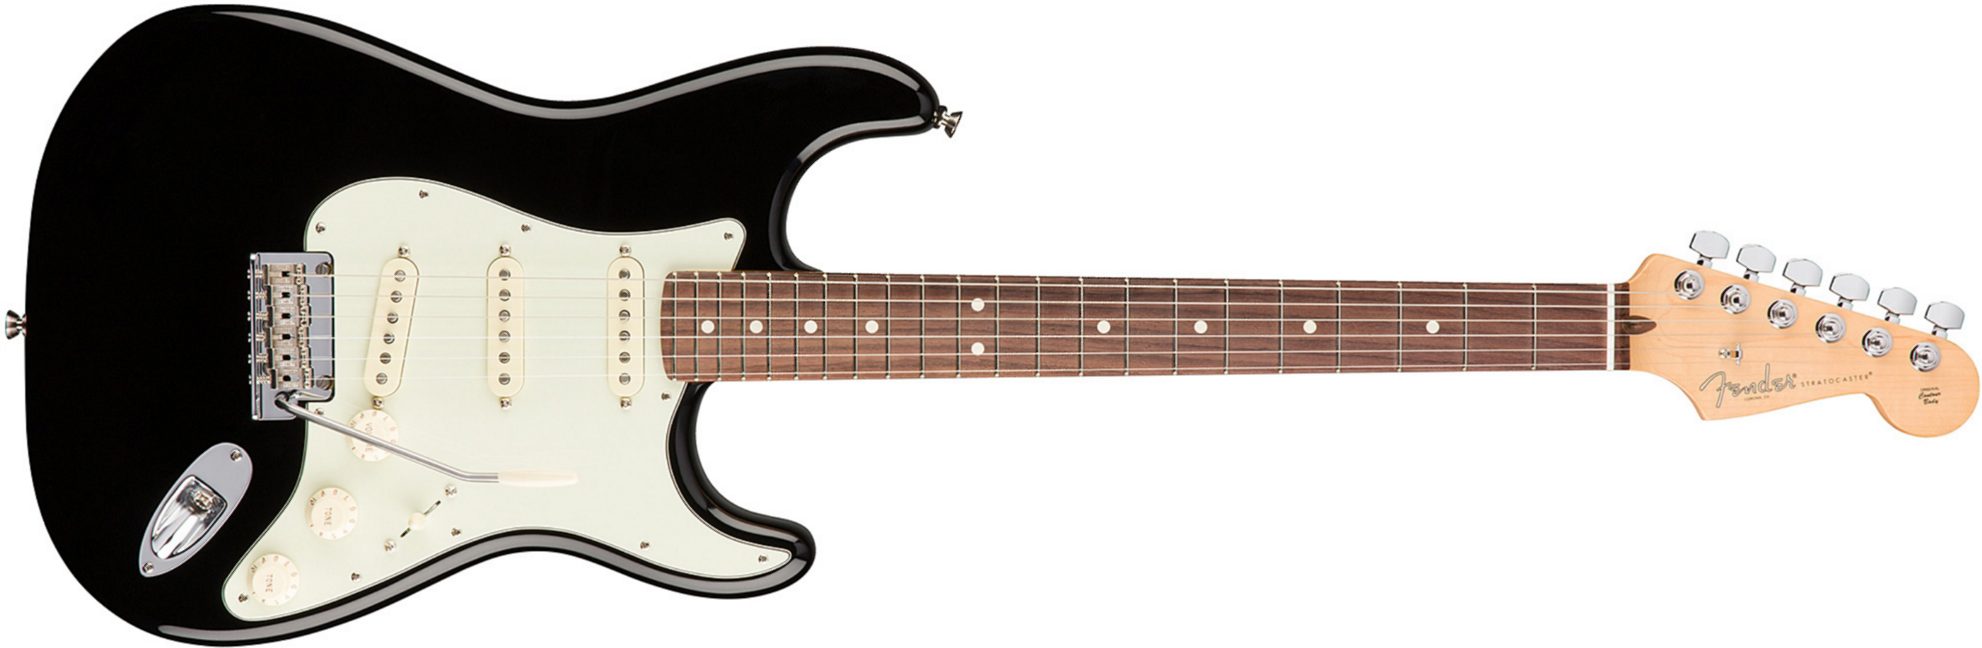 Fender Strat American Professional 2017 3s Usa Rw - Black - E-Gitarre in Str-Form - Main picture